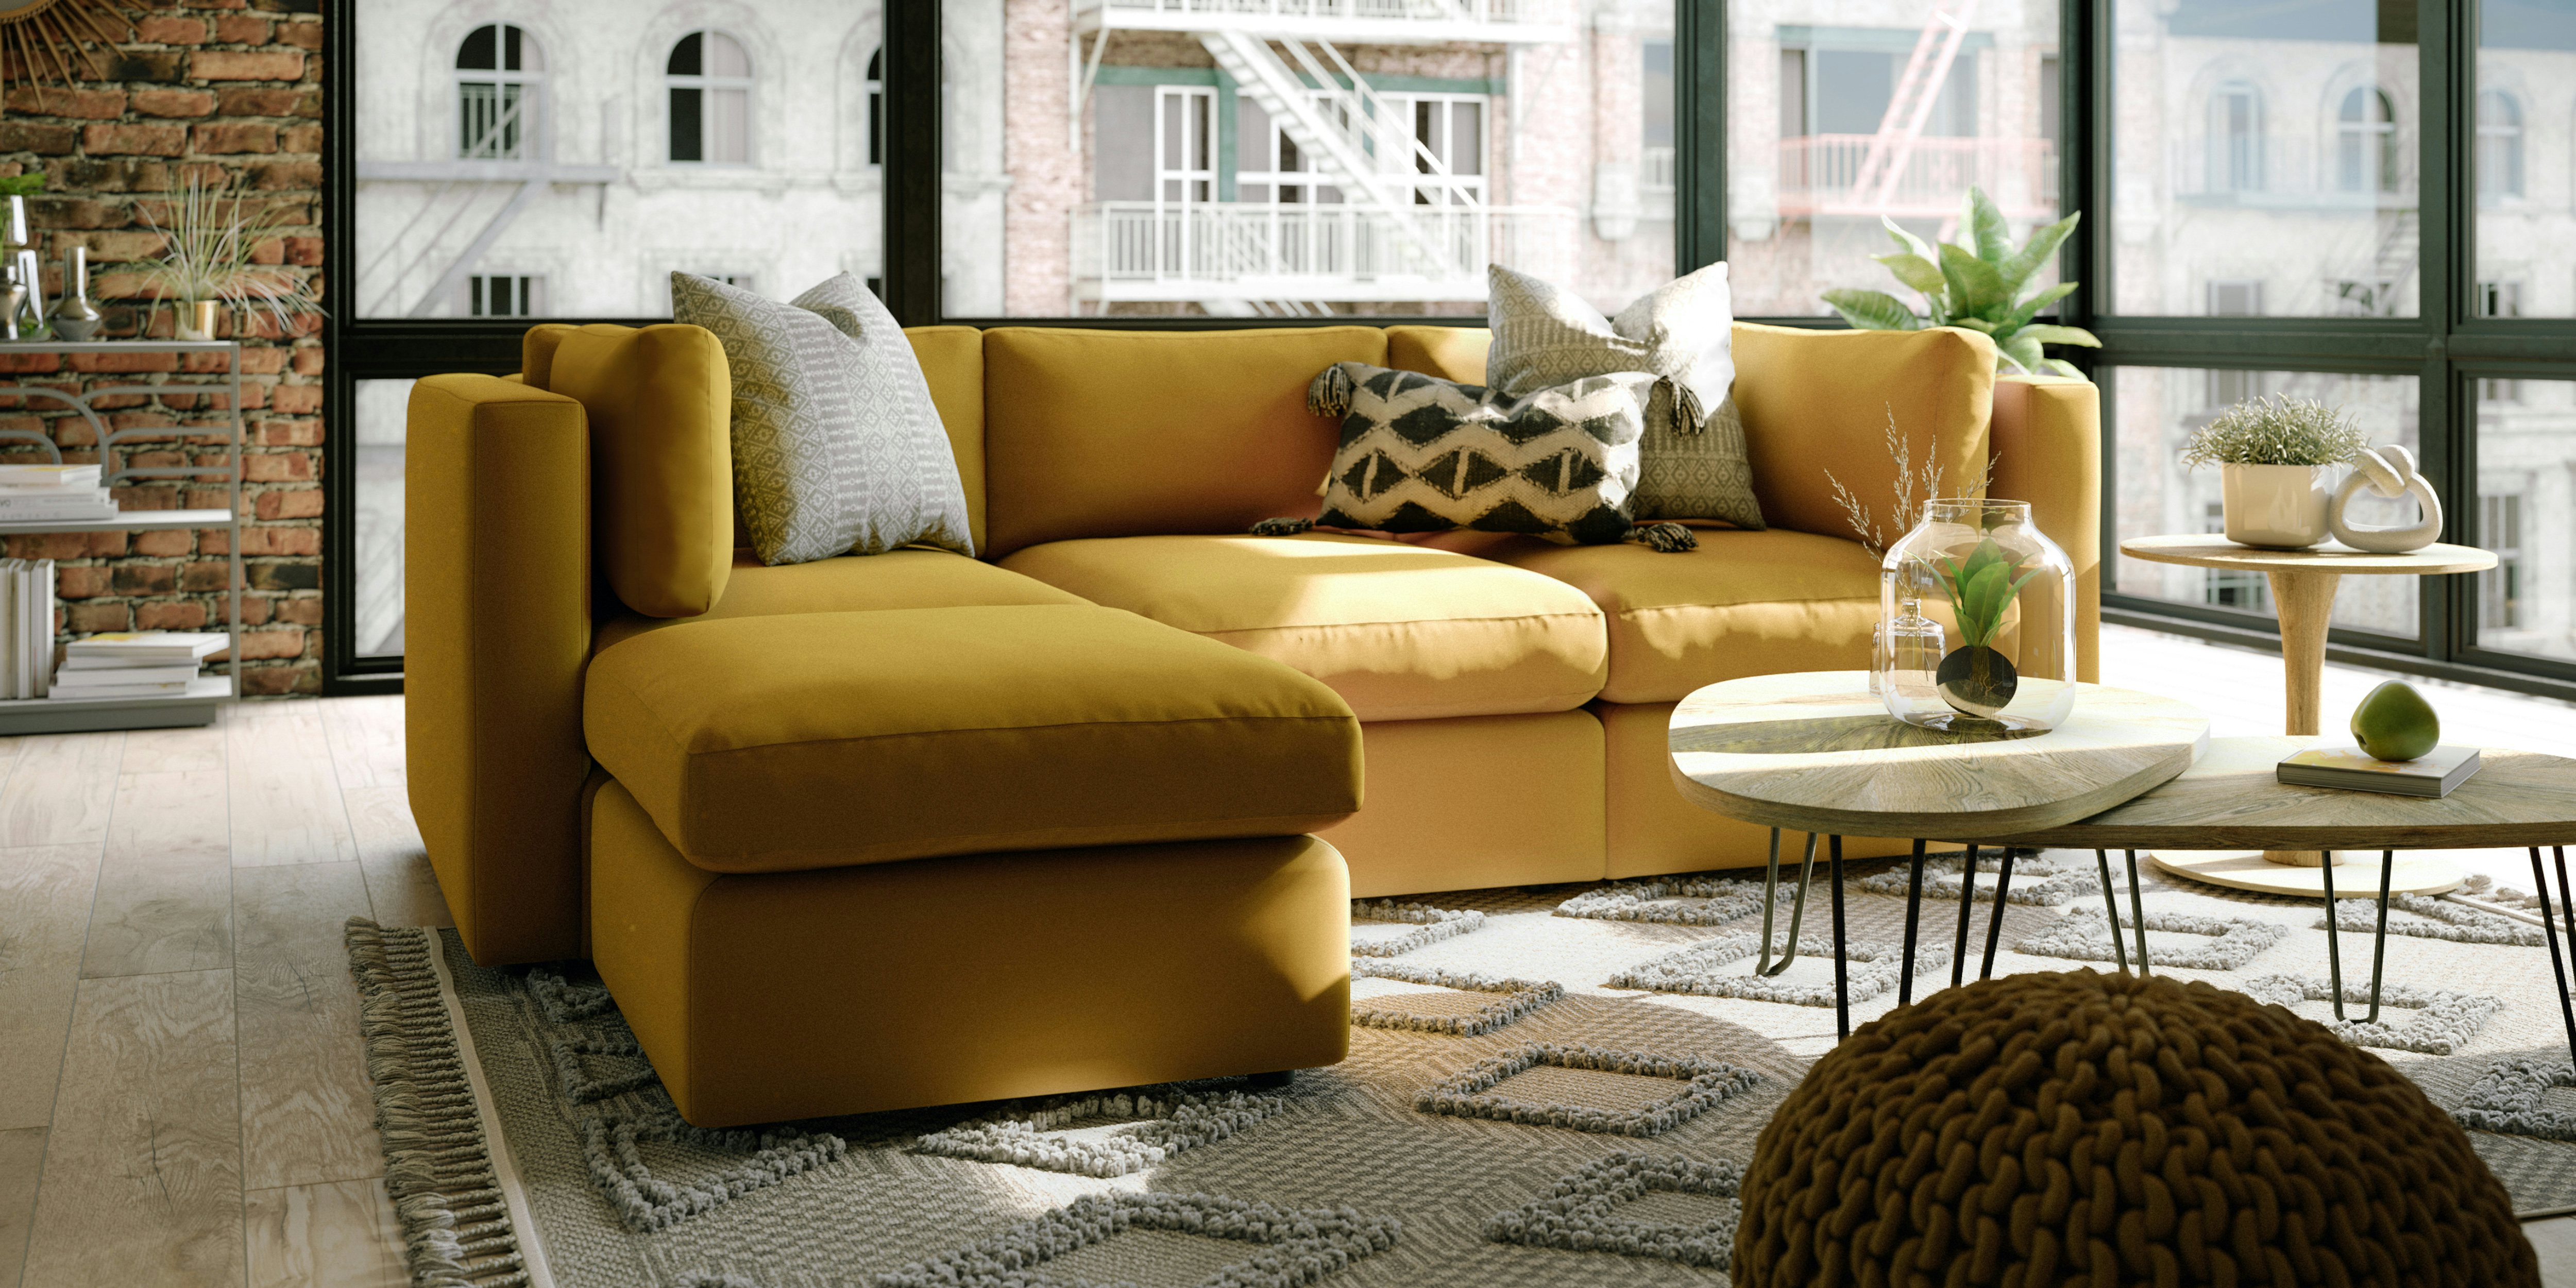 Customised Interior Design Furniture Online Buy Custom Design Home Interiors Furnitures